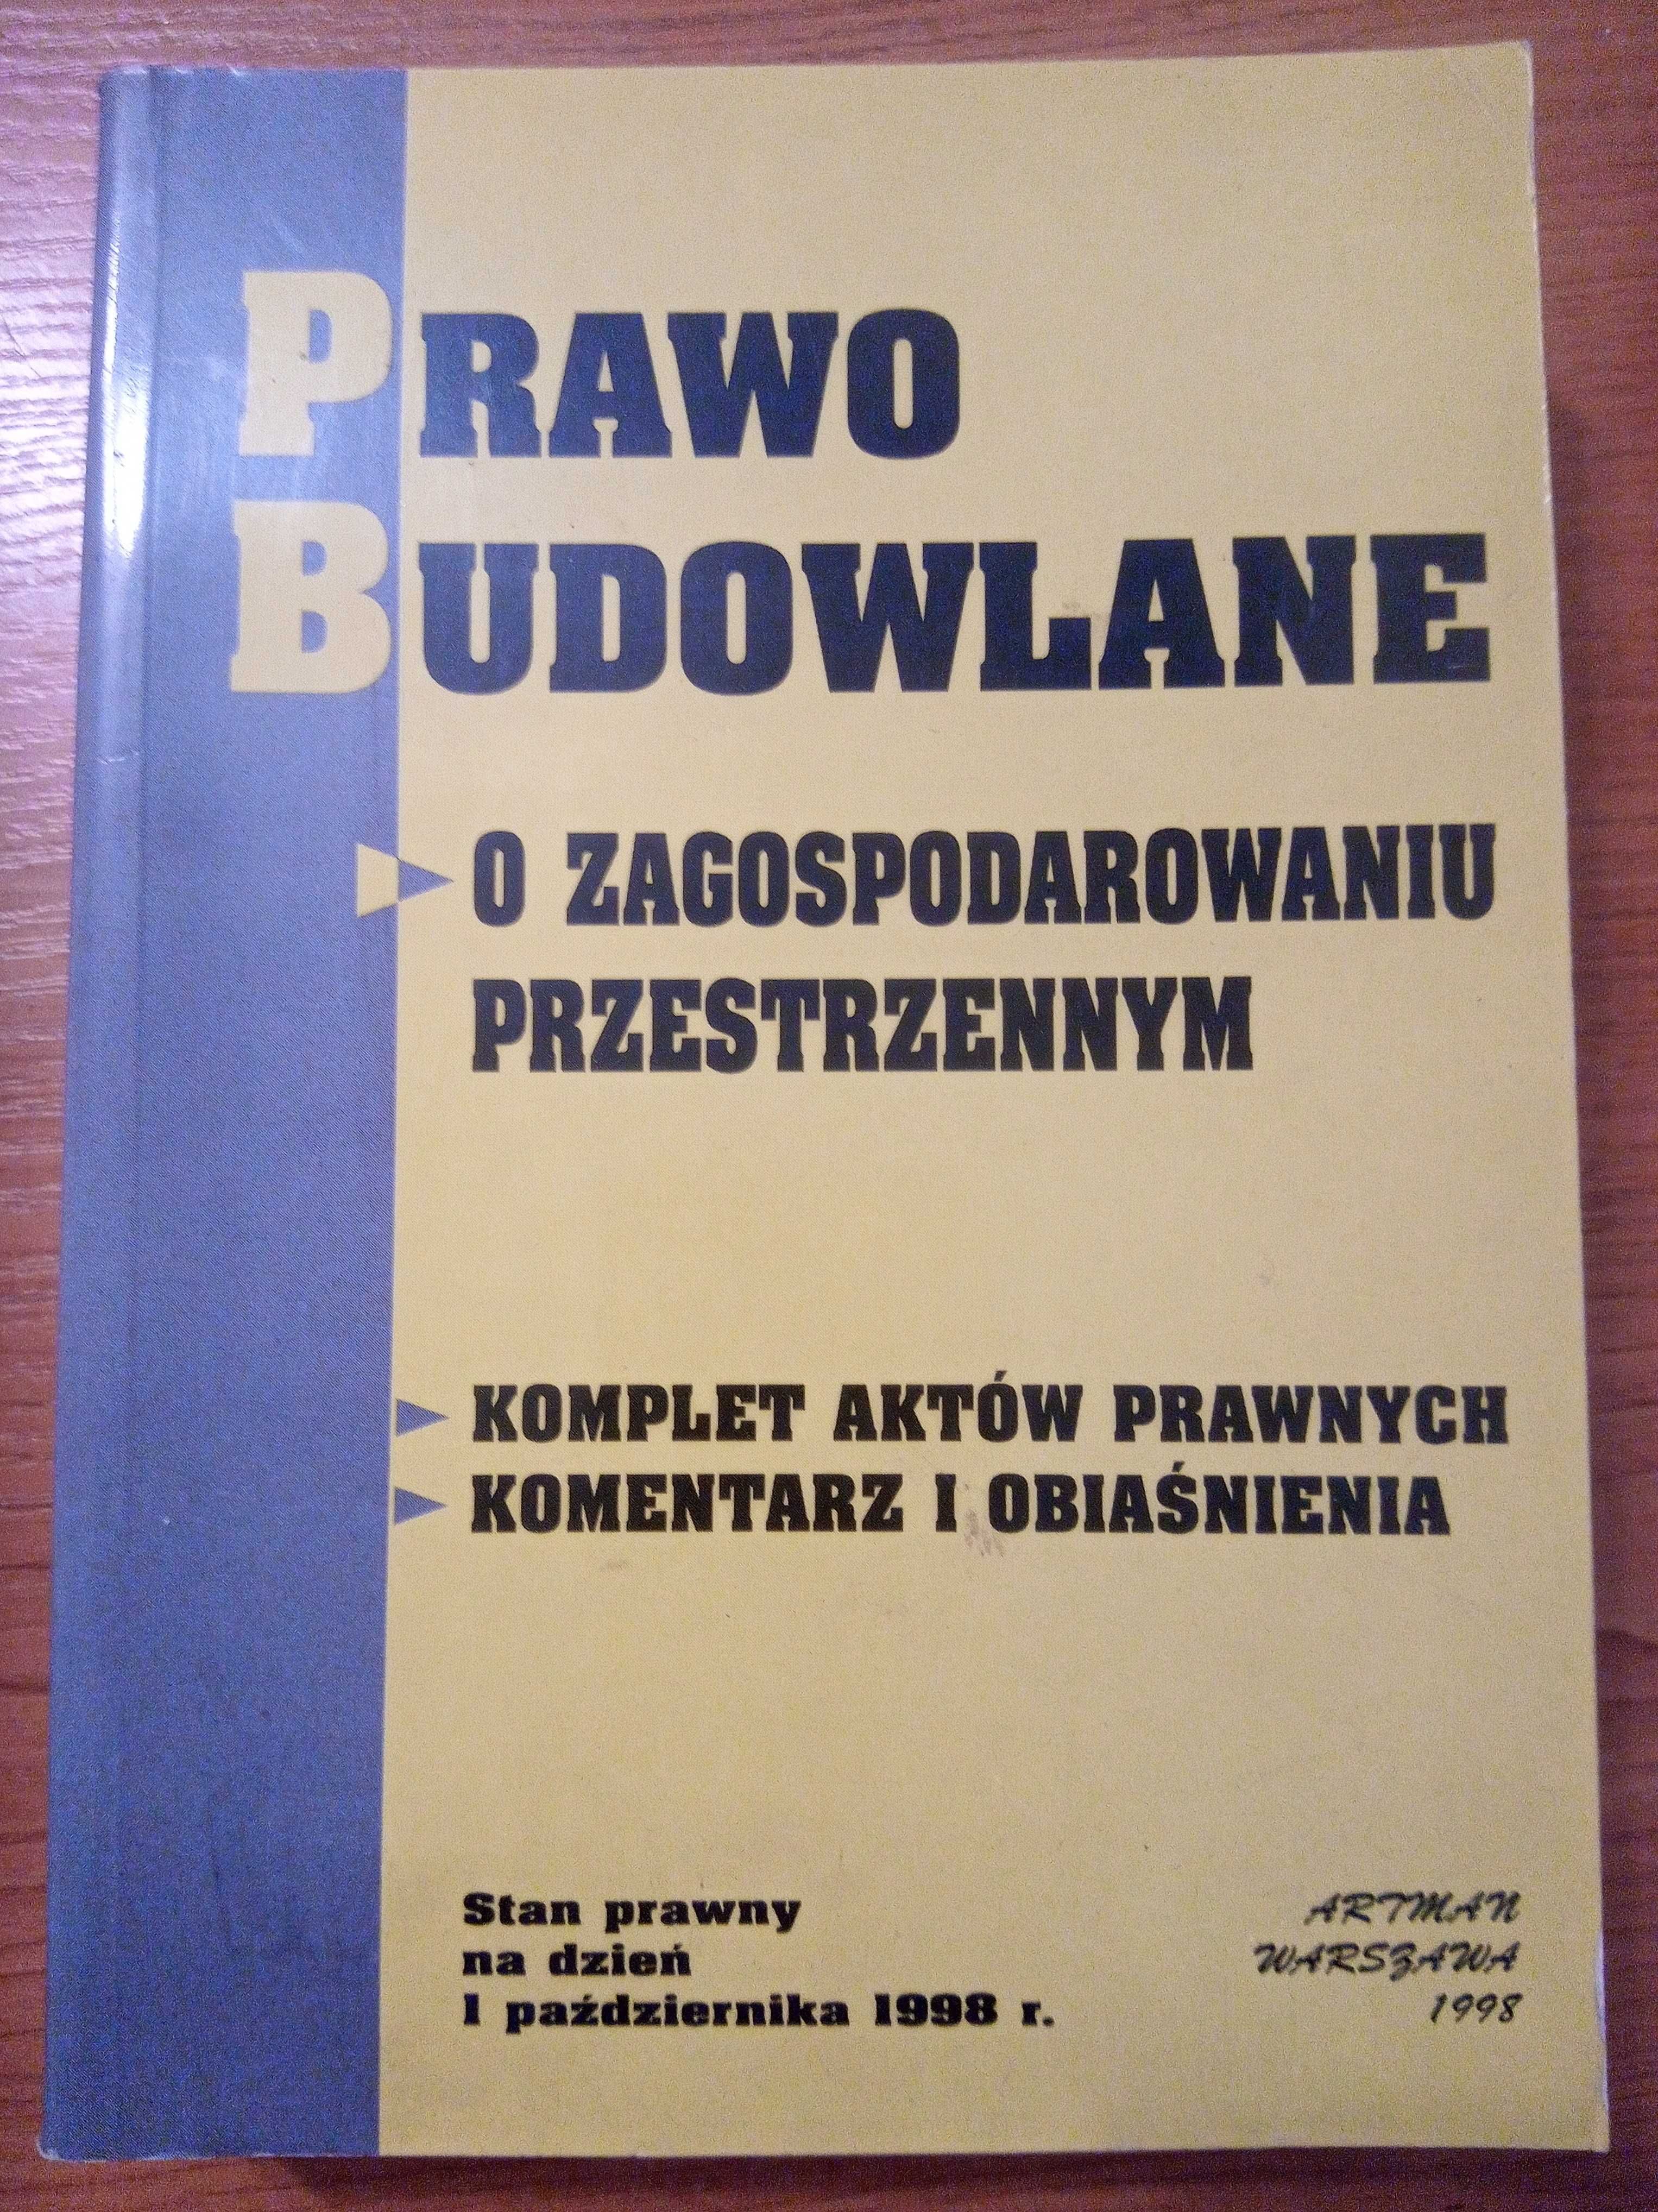 Tadeusz Fijałkowski "Prawo Budowlane"